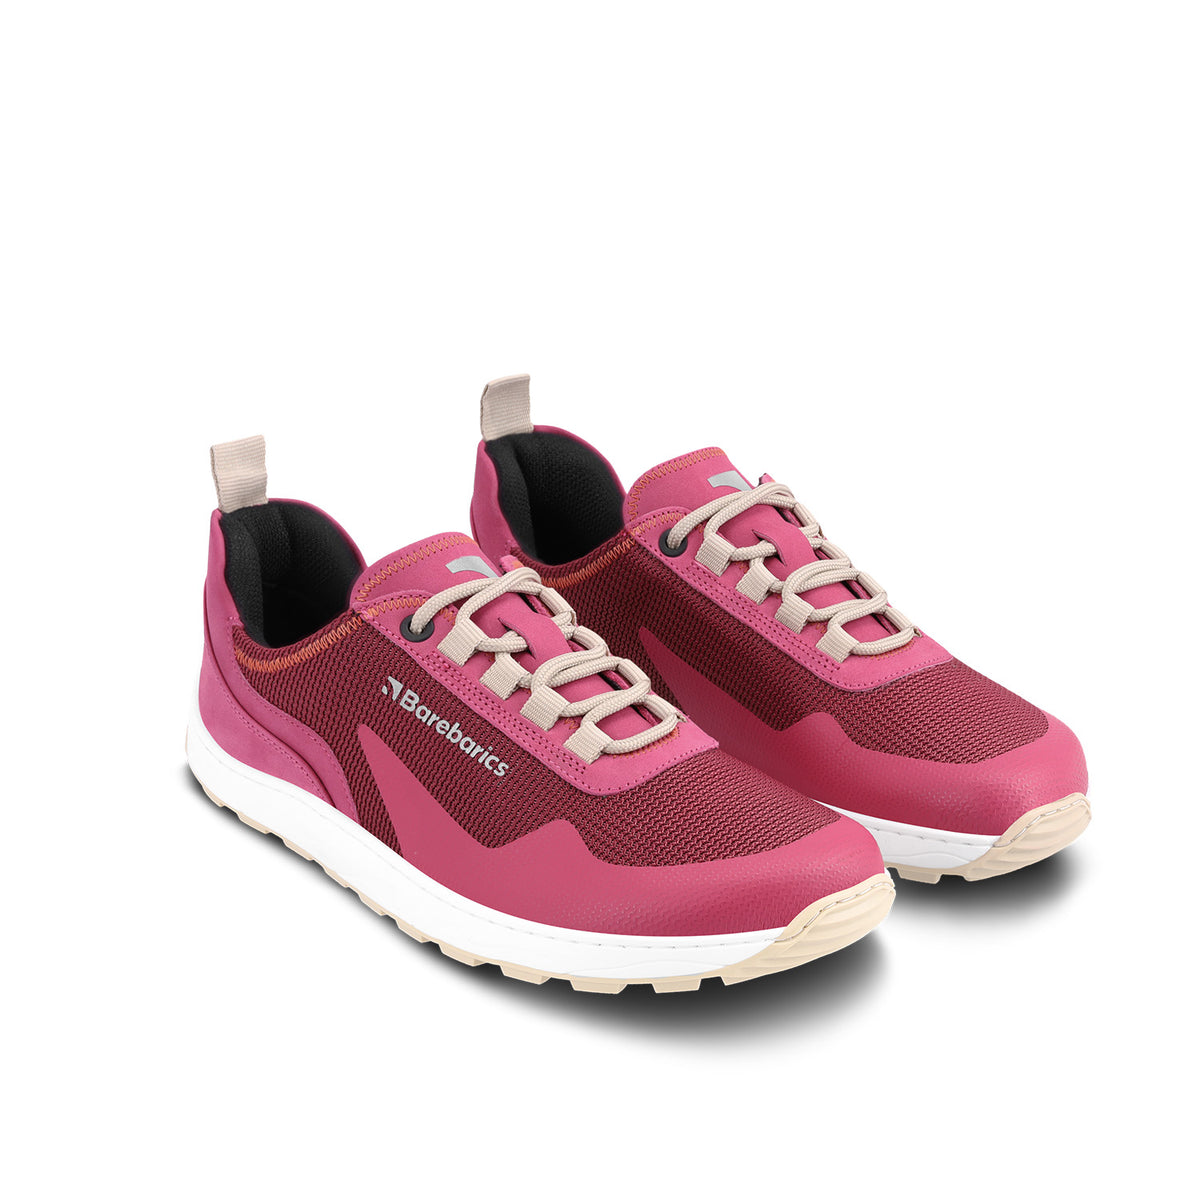 Barefoot Sneakers Barebarics Wanderer - Dark Pink 4  - OzBarefoot